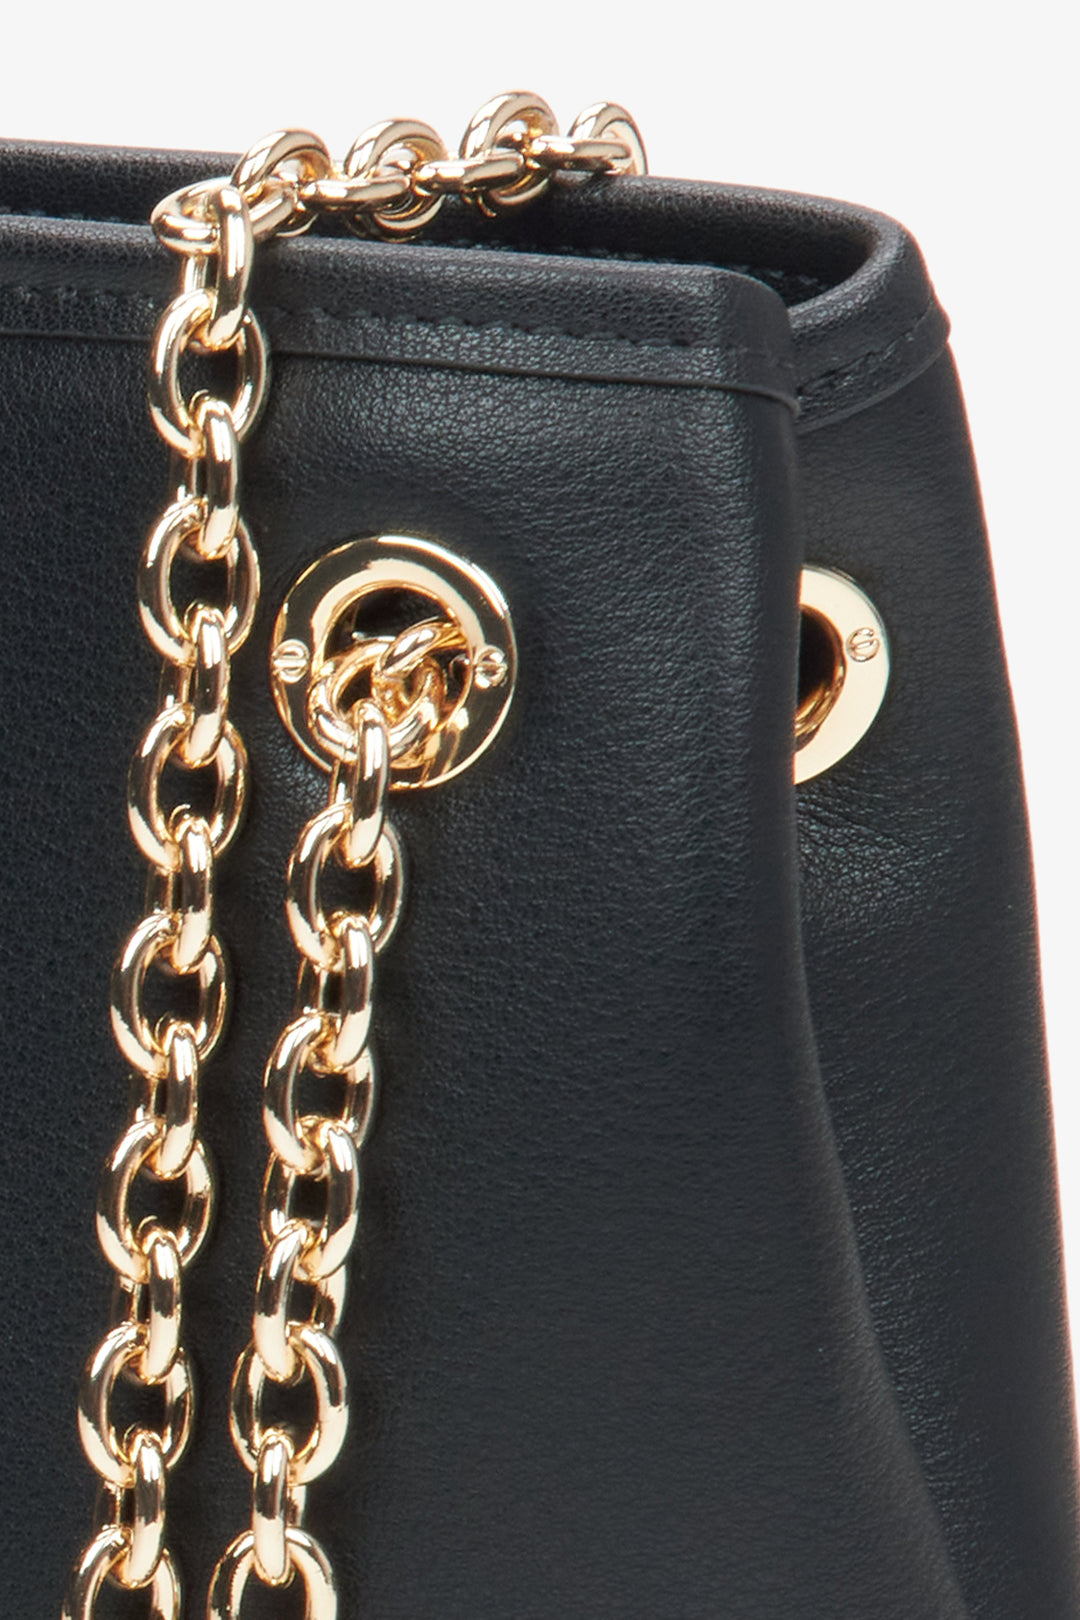 Women's black chain bag Estro - a close-up on details.